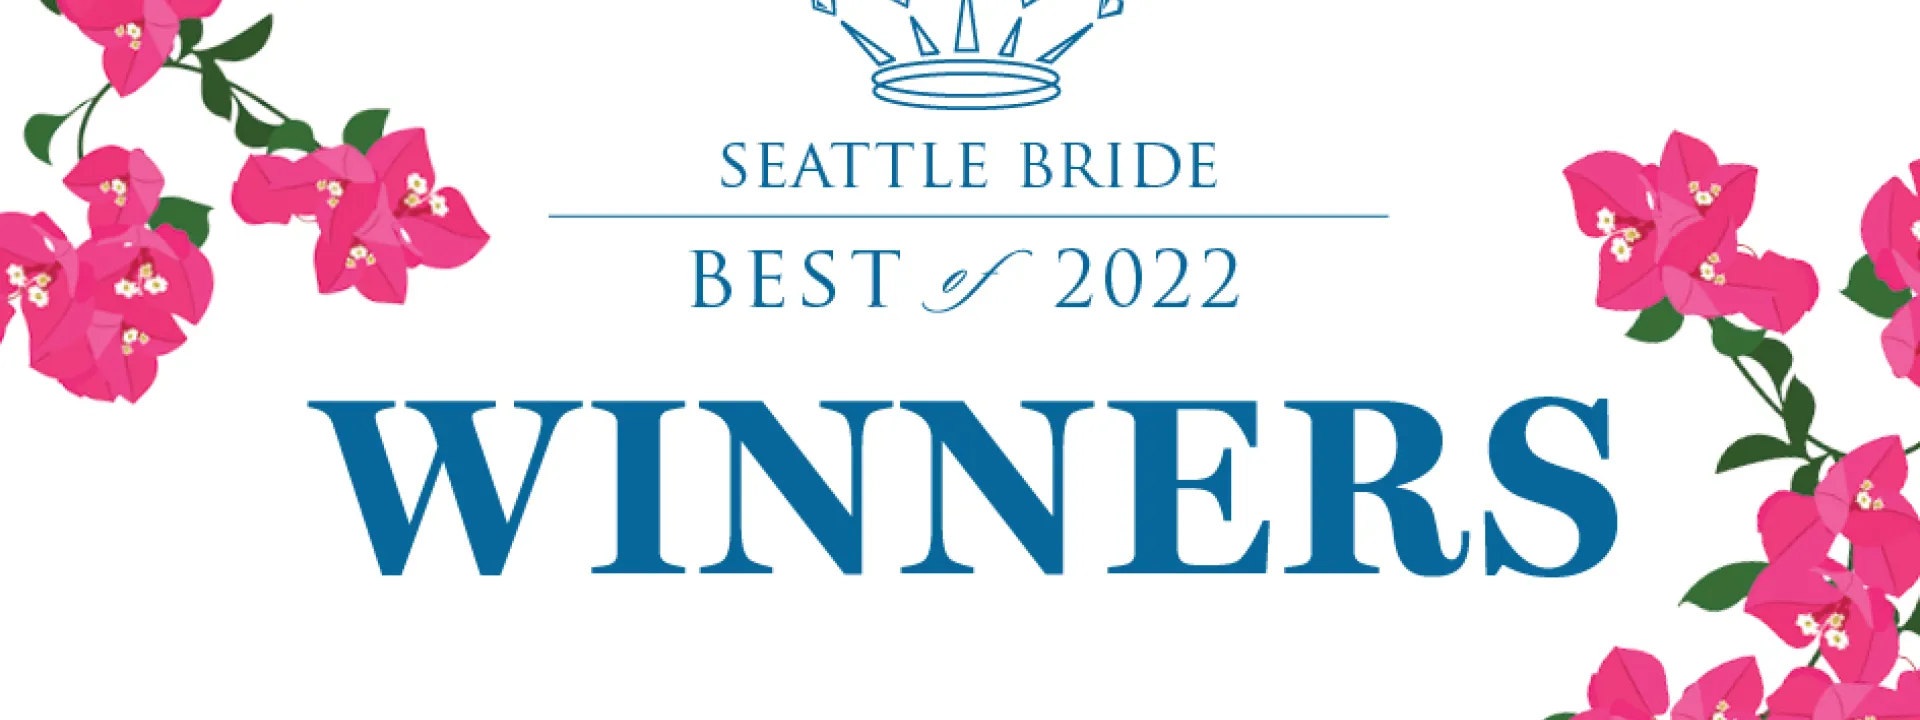 Seattle Bride's Best of 2022 Winners